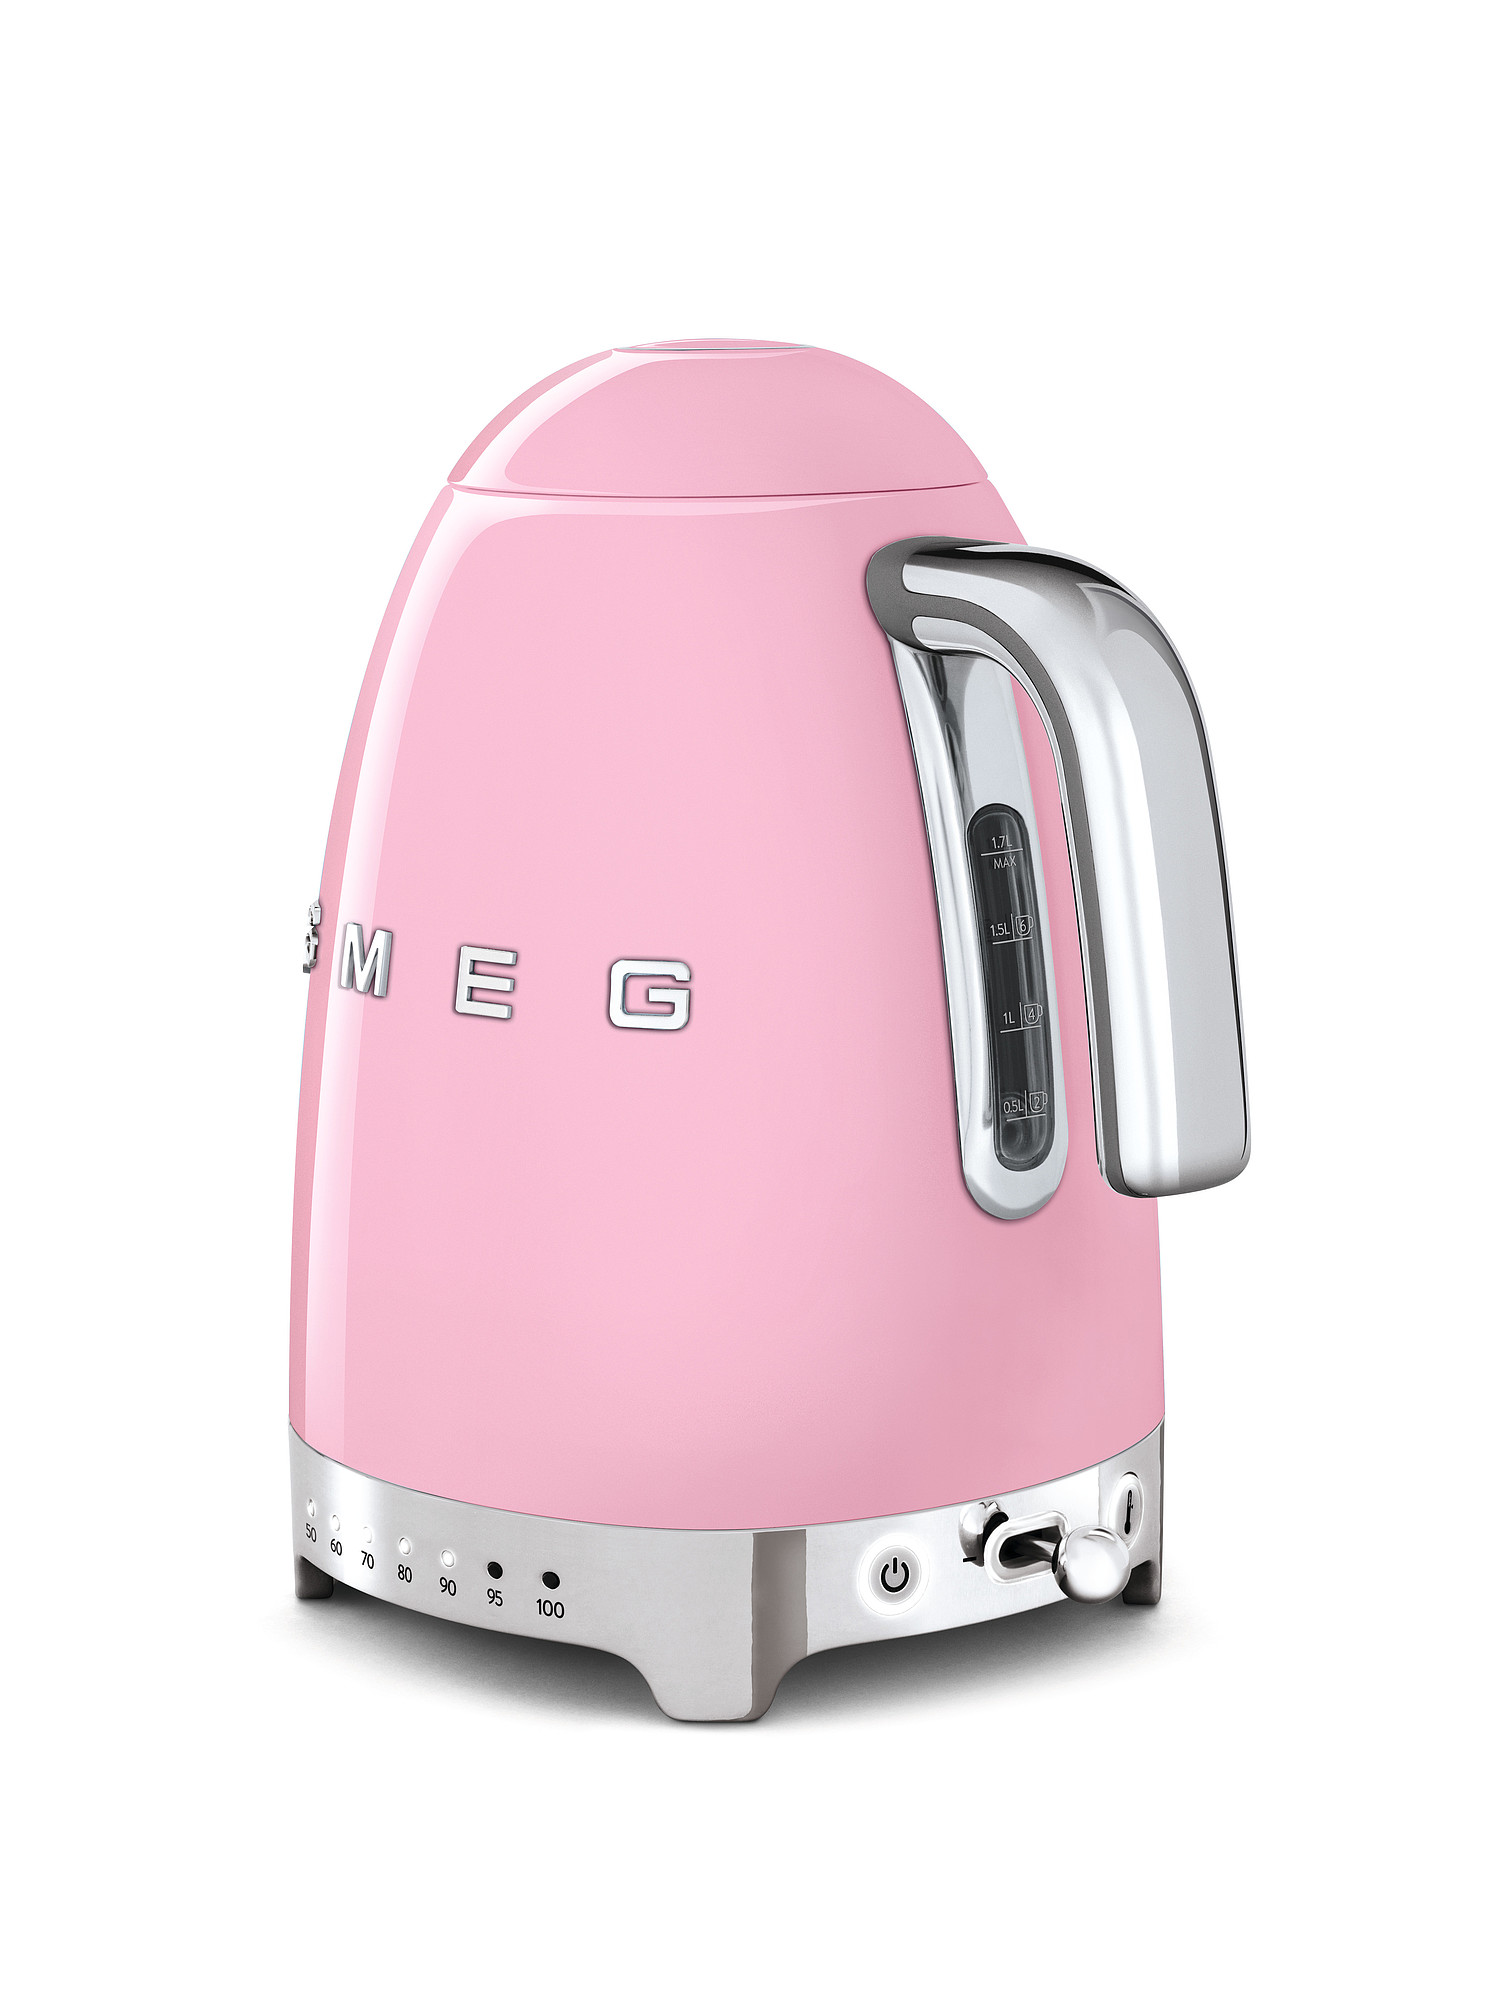 SMEG Wasserkocher mit Temperaturregelung - Toaster Set Cadillac Pink